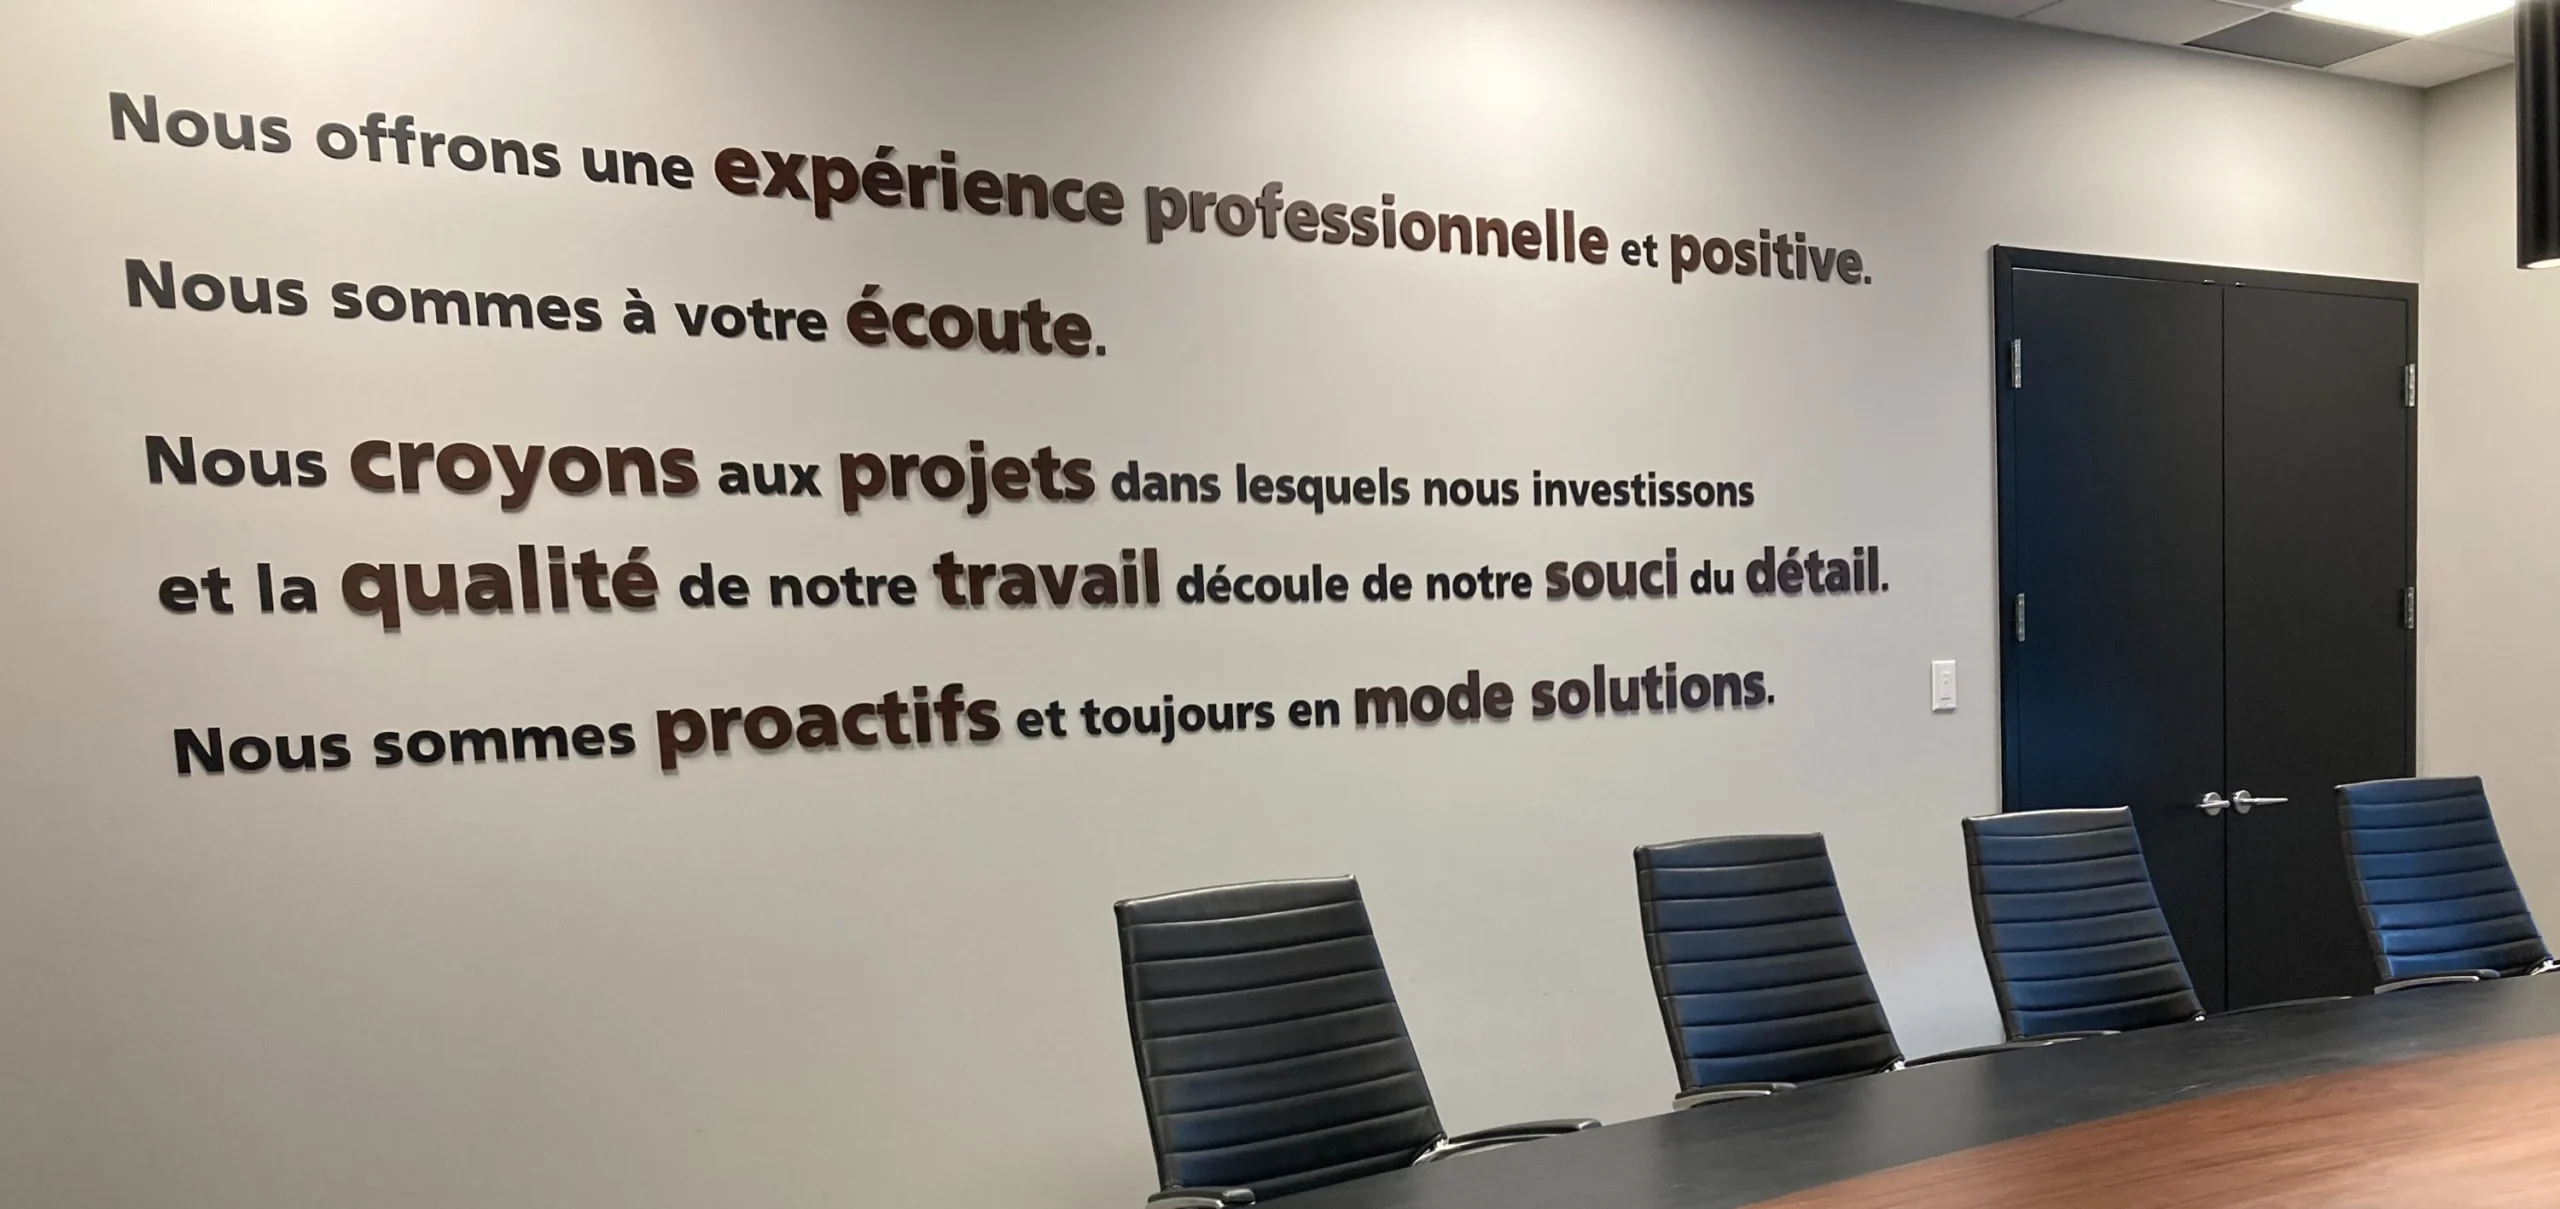 Une citation affichée sur le mur du siège social de Protech Construction, mettant en avant leur engagement envers l'imputabilité.